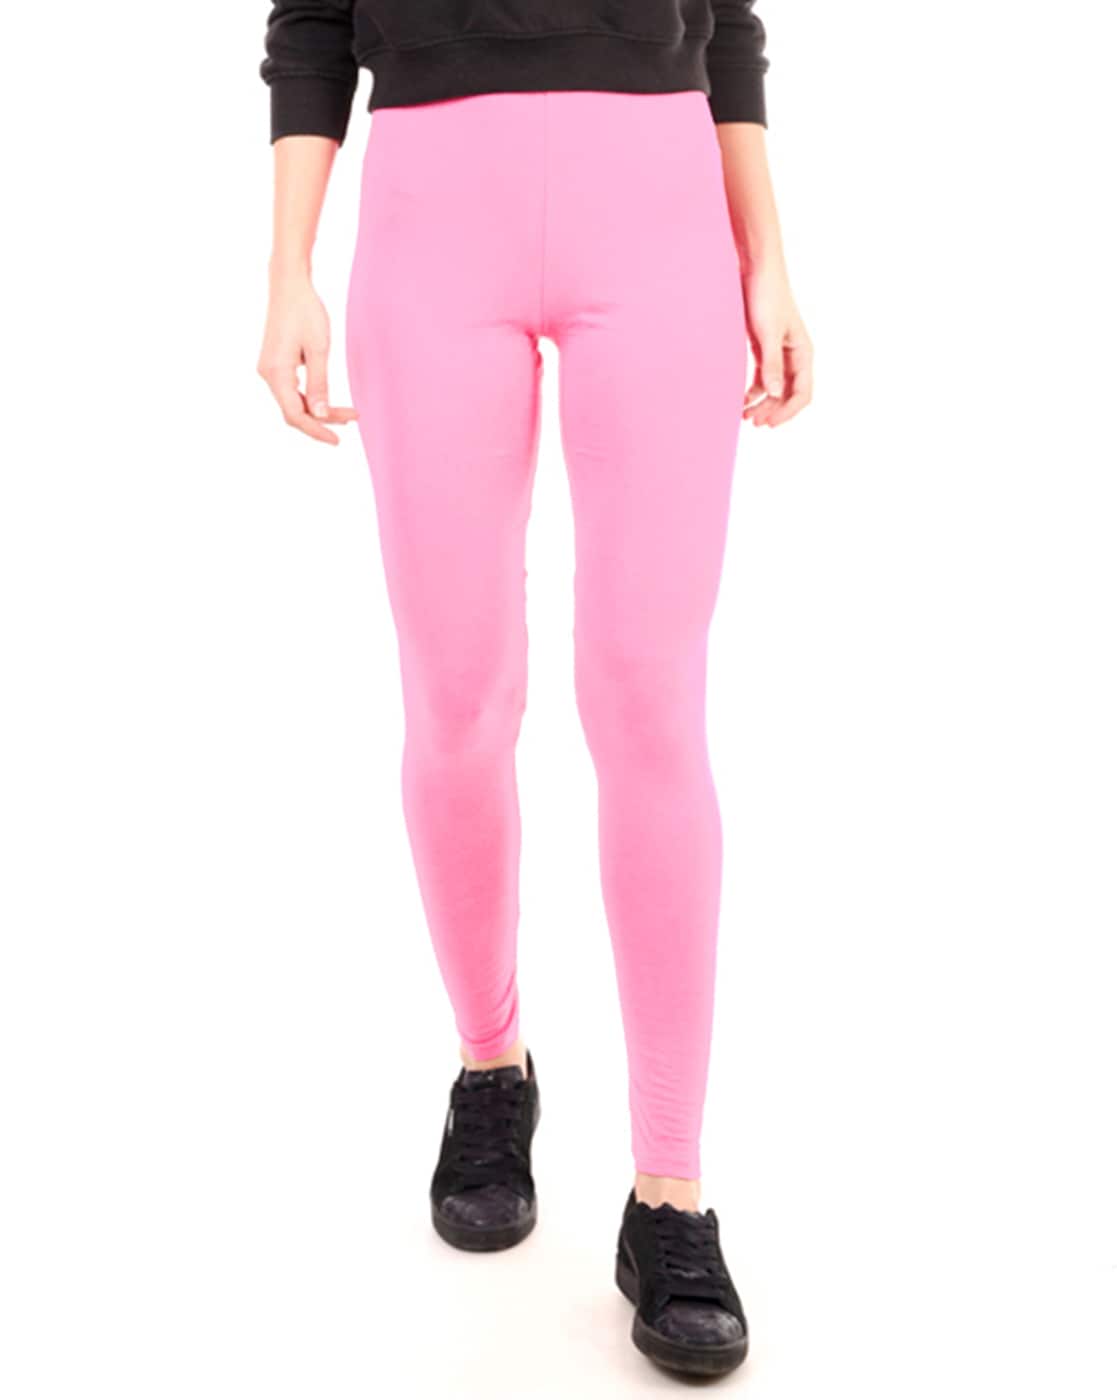 Buy Leggings Pink Sale Online